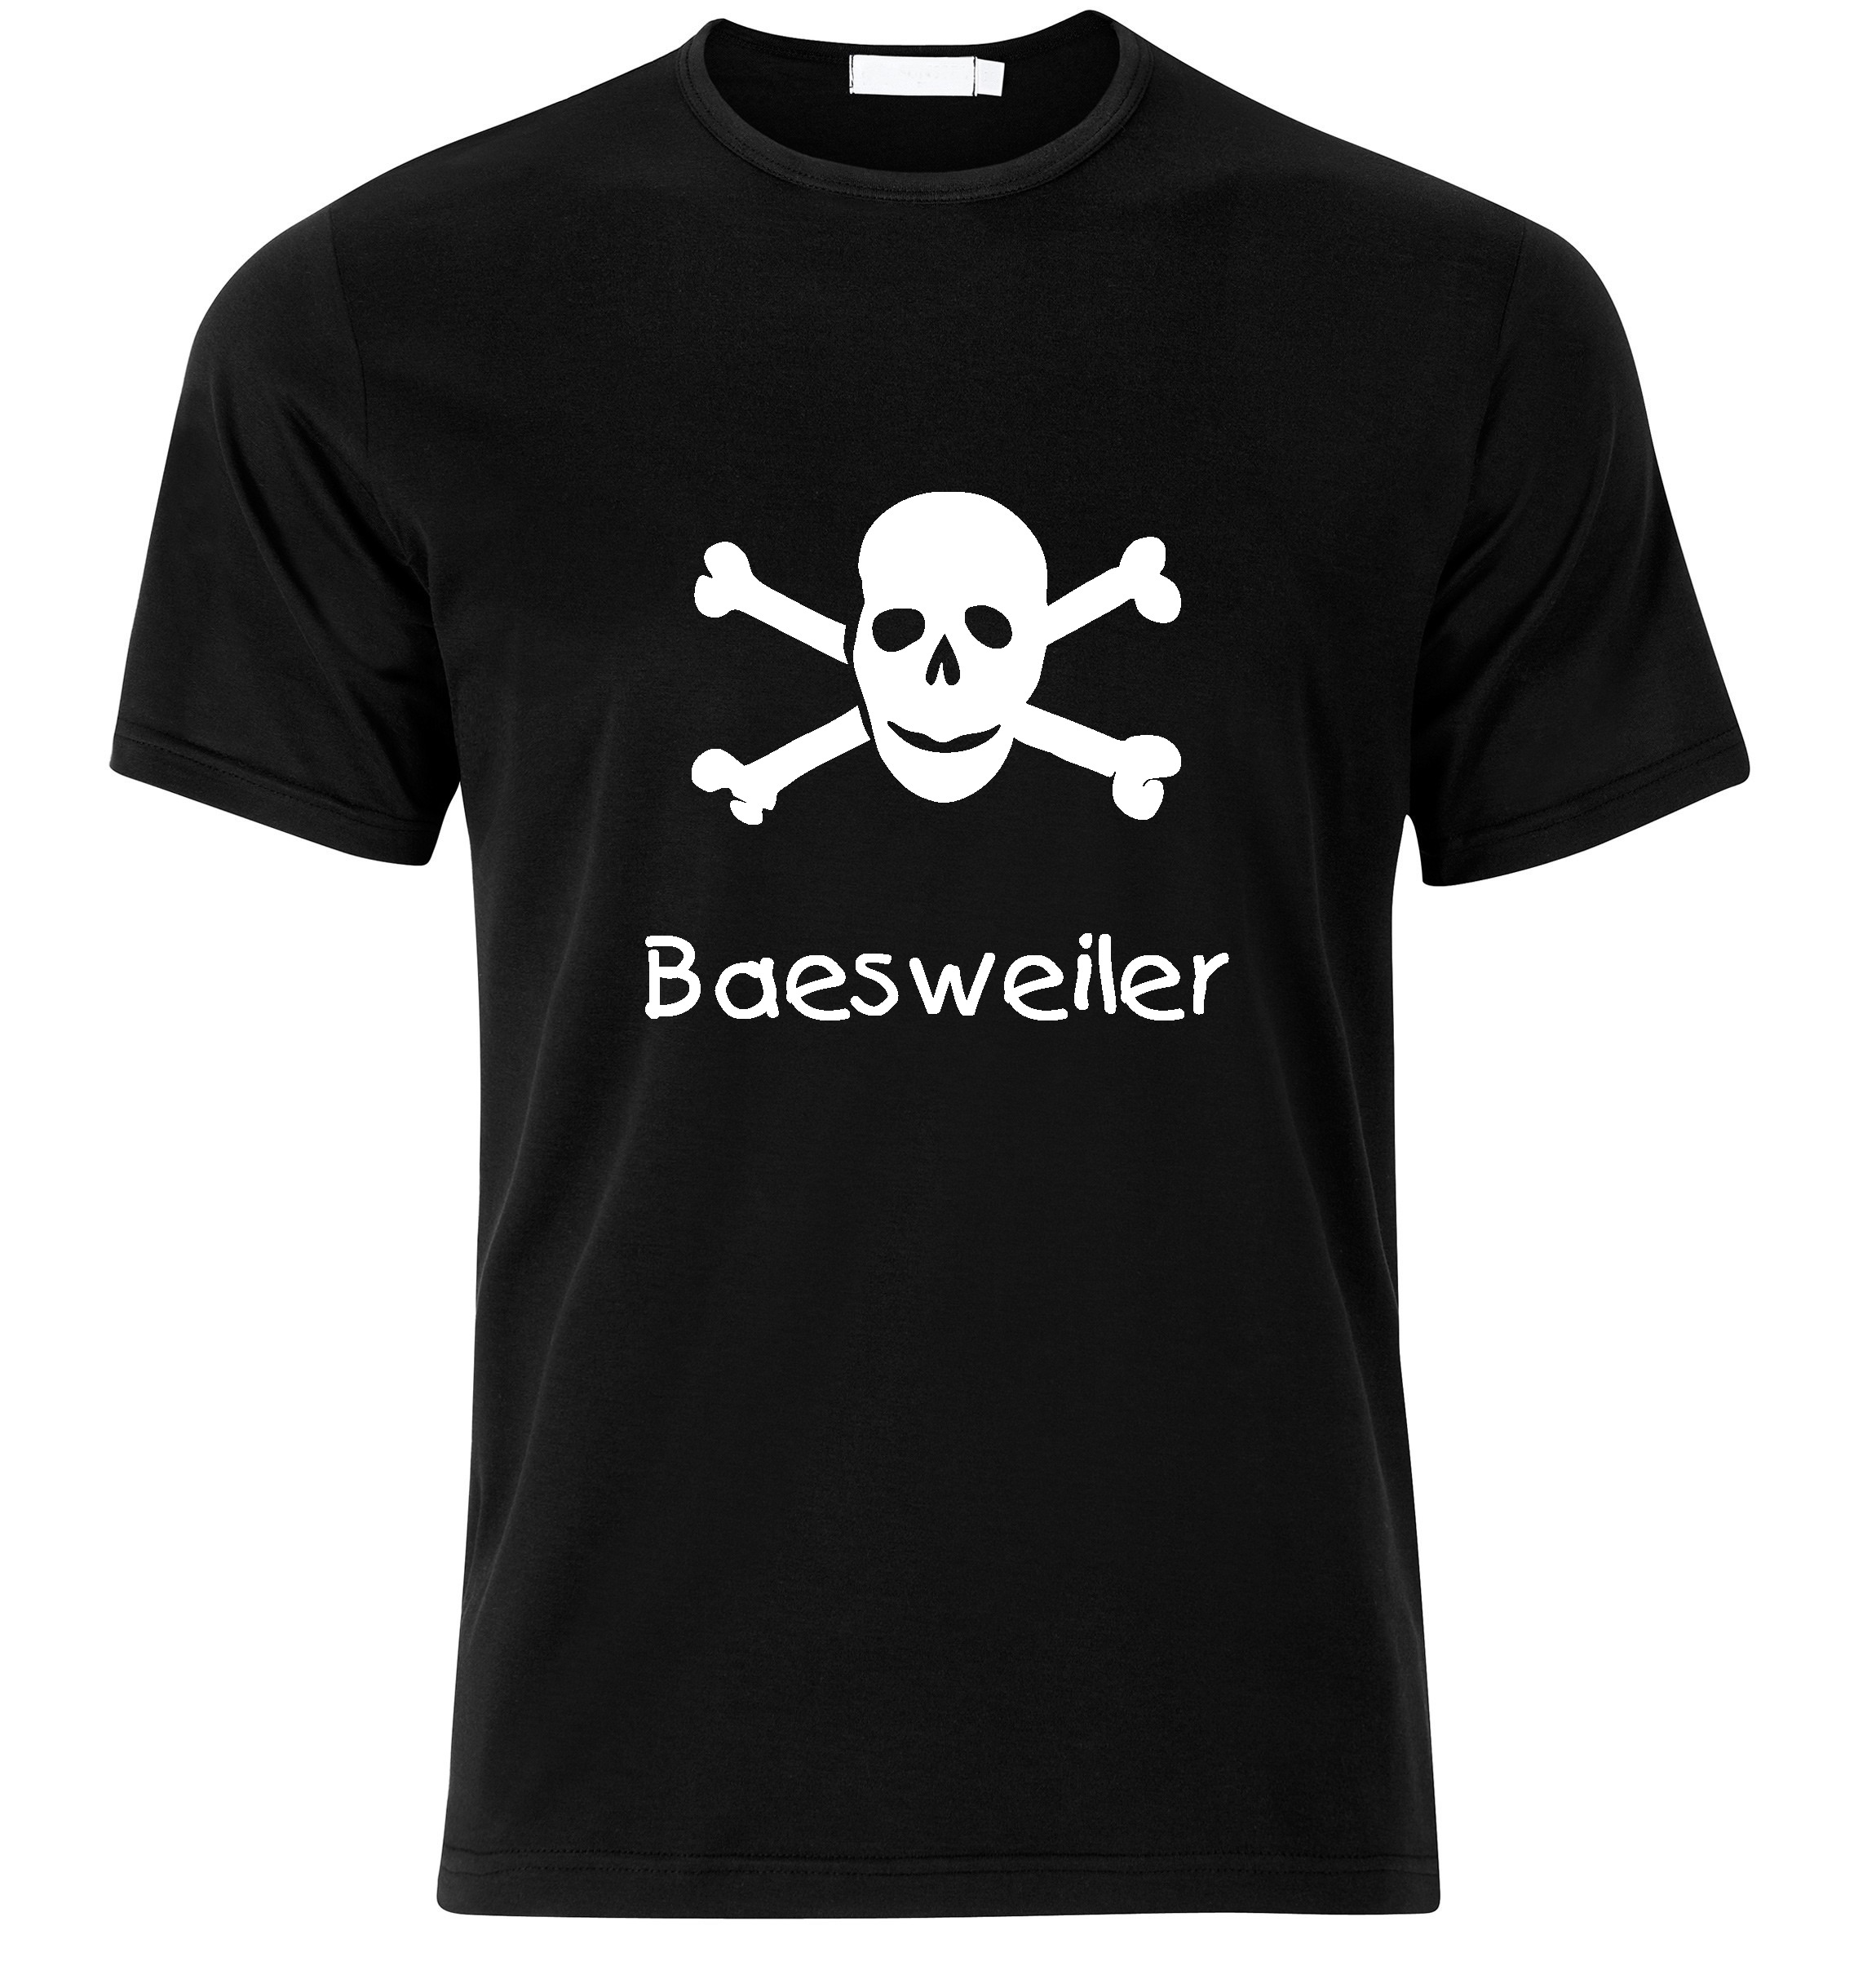 T-Shirt Baesweiler Jolly Roger, Totenkopf